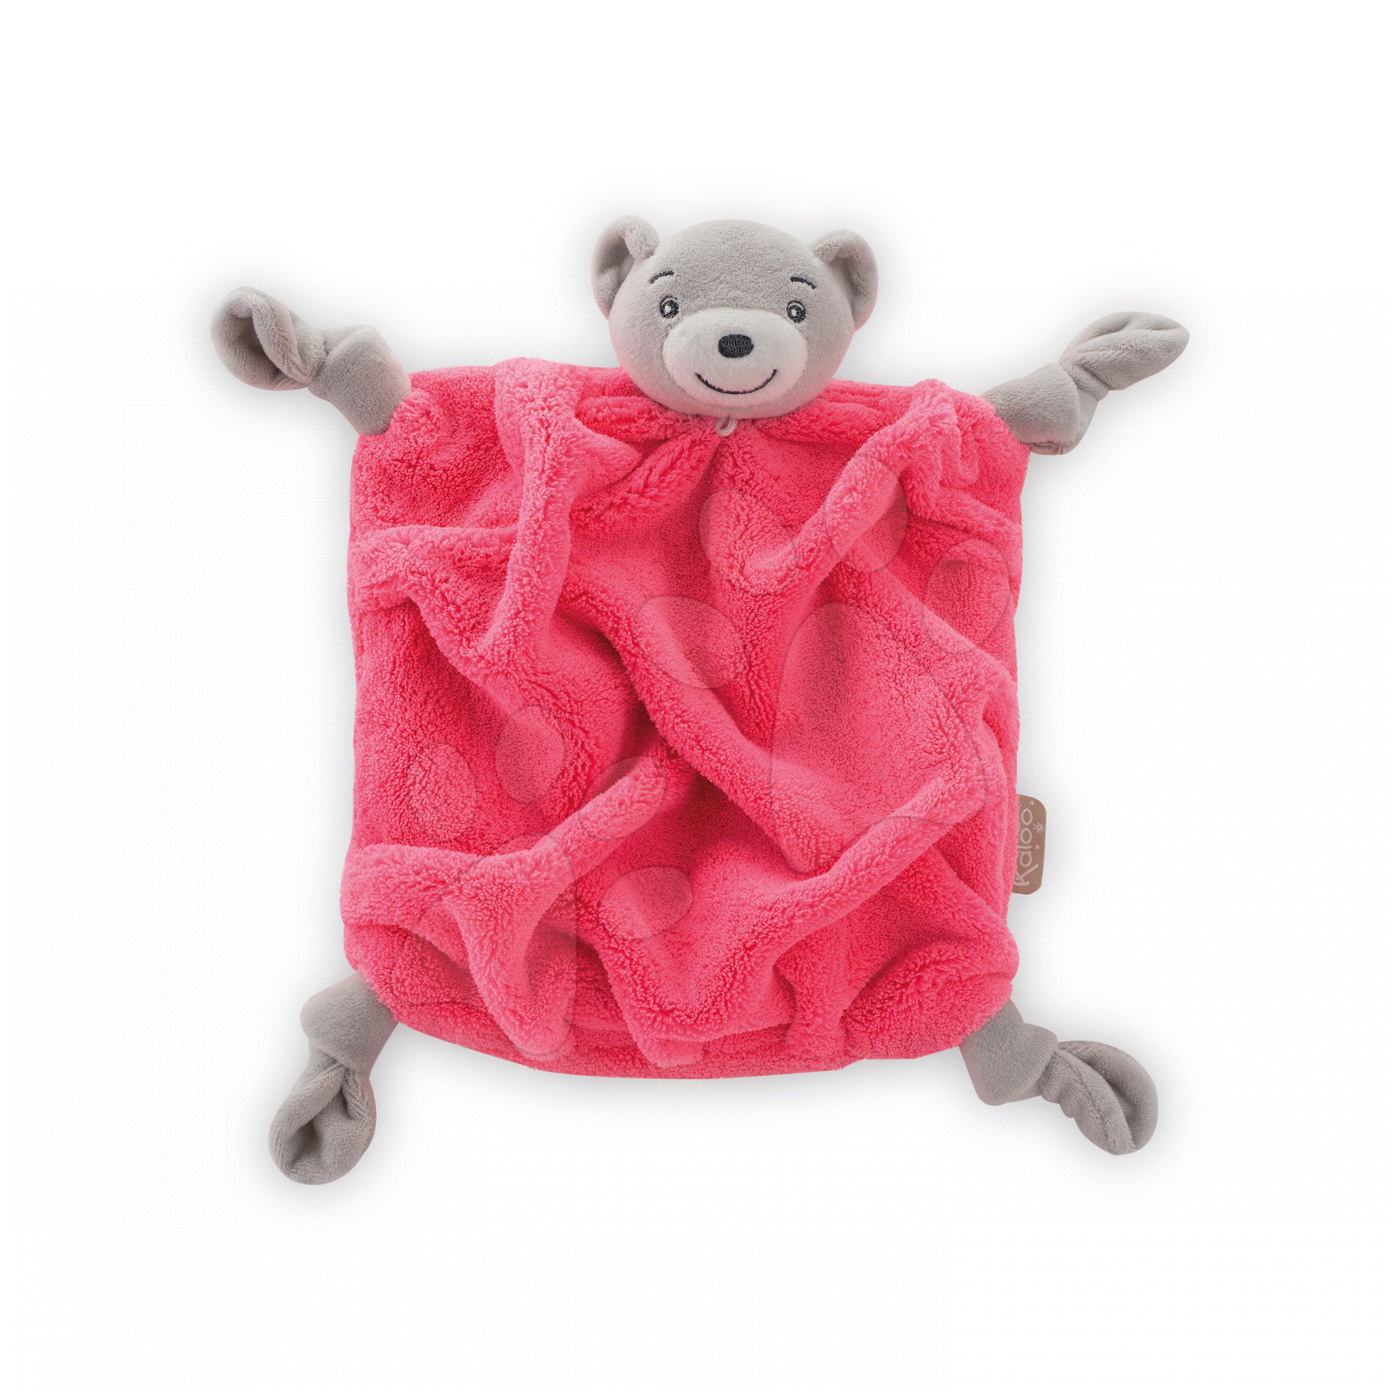 Alvókendők DouDou - Plüss mackó babusgatáshoz Neon Doudou Kaloo 20 cm ajándékcsomagolásban legkisebbeknek rózsaszín